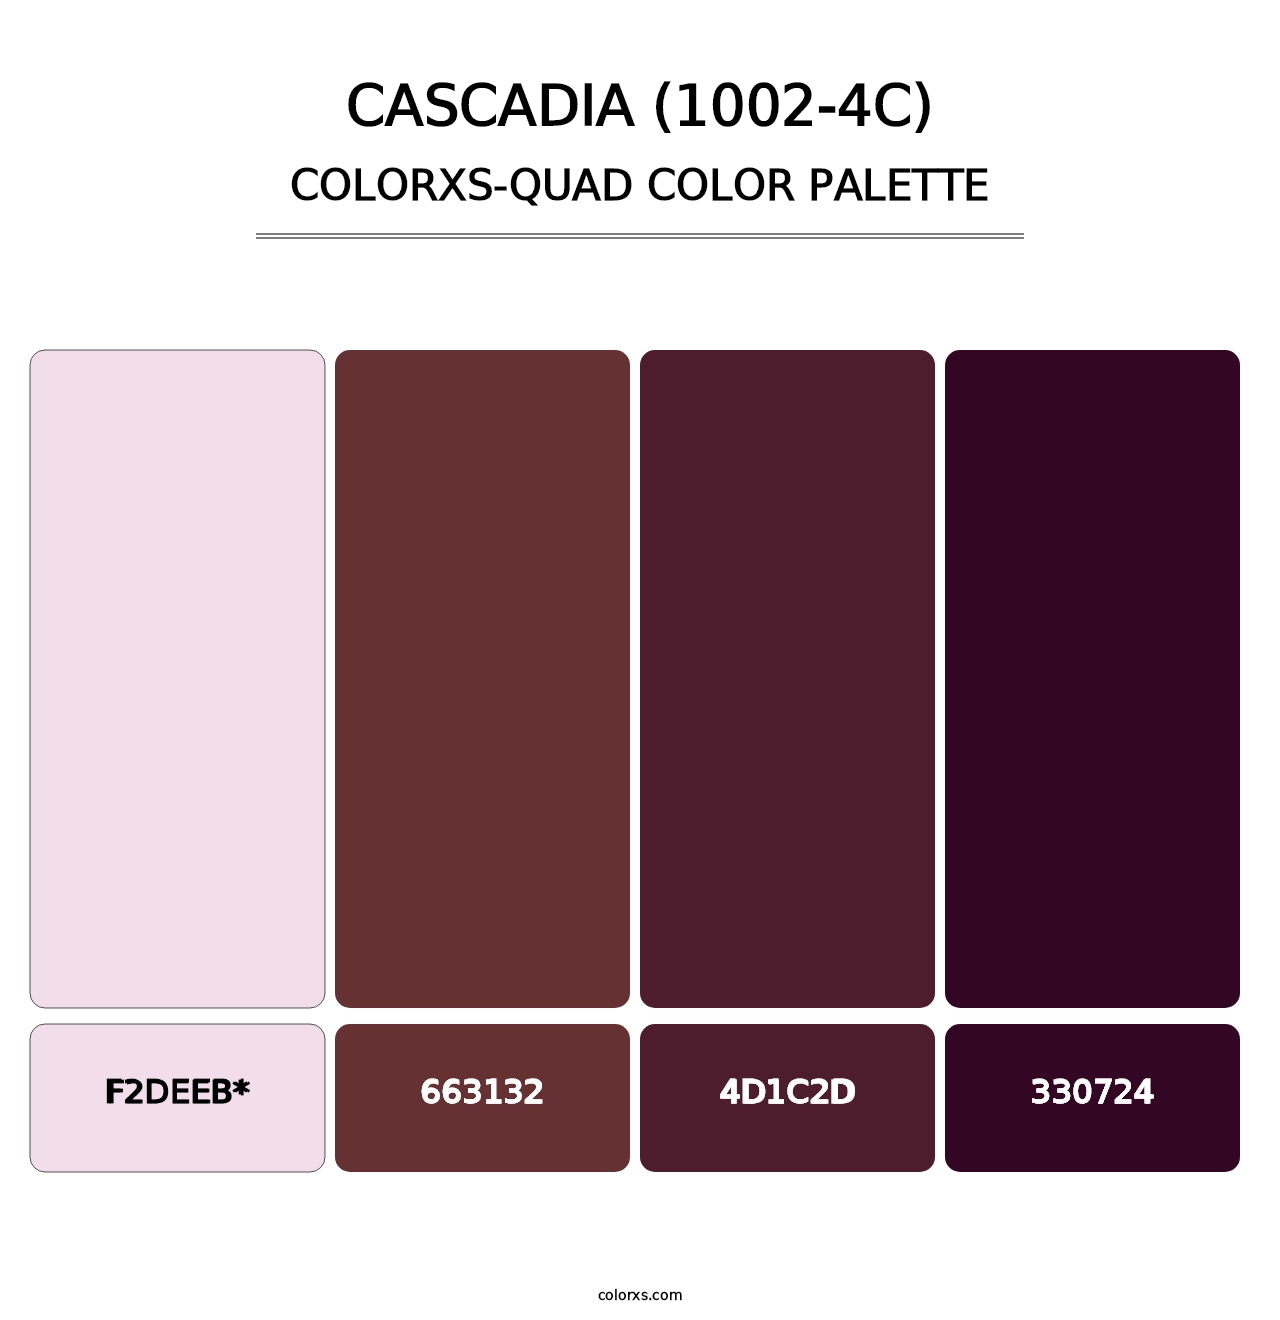 Cascadia (1002-4C) - Colorxs Quad Palette